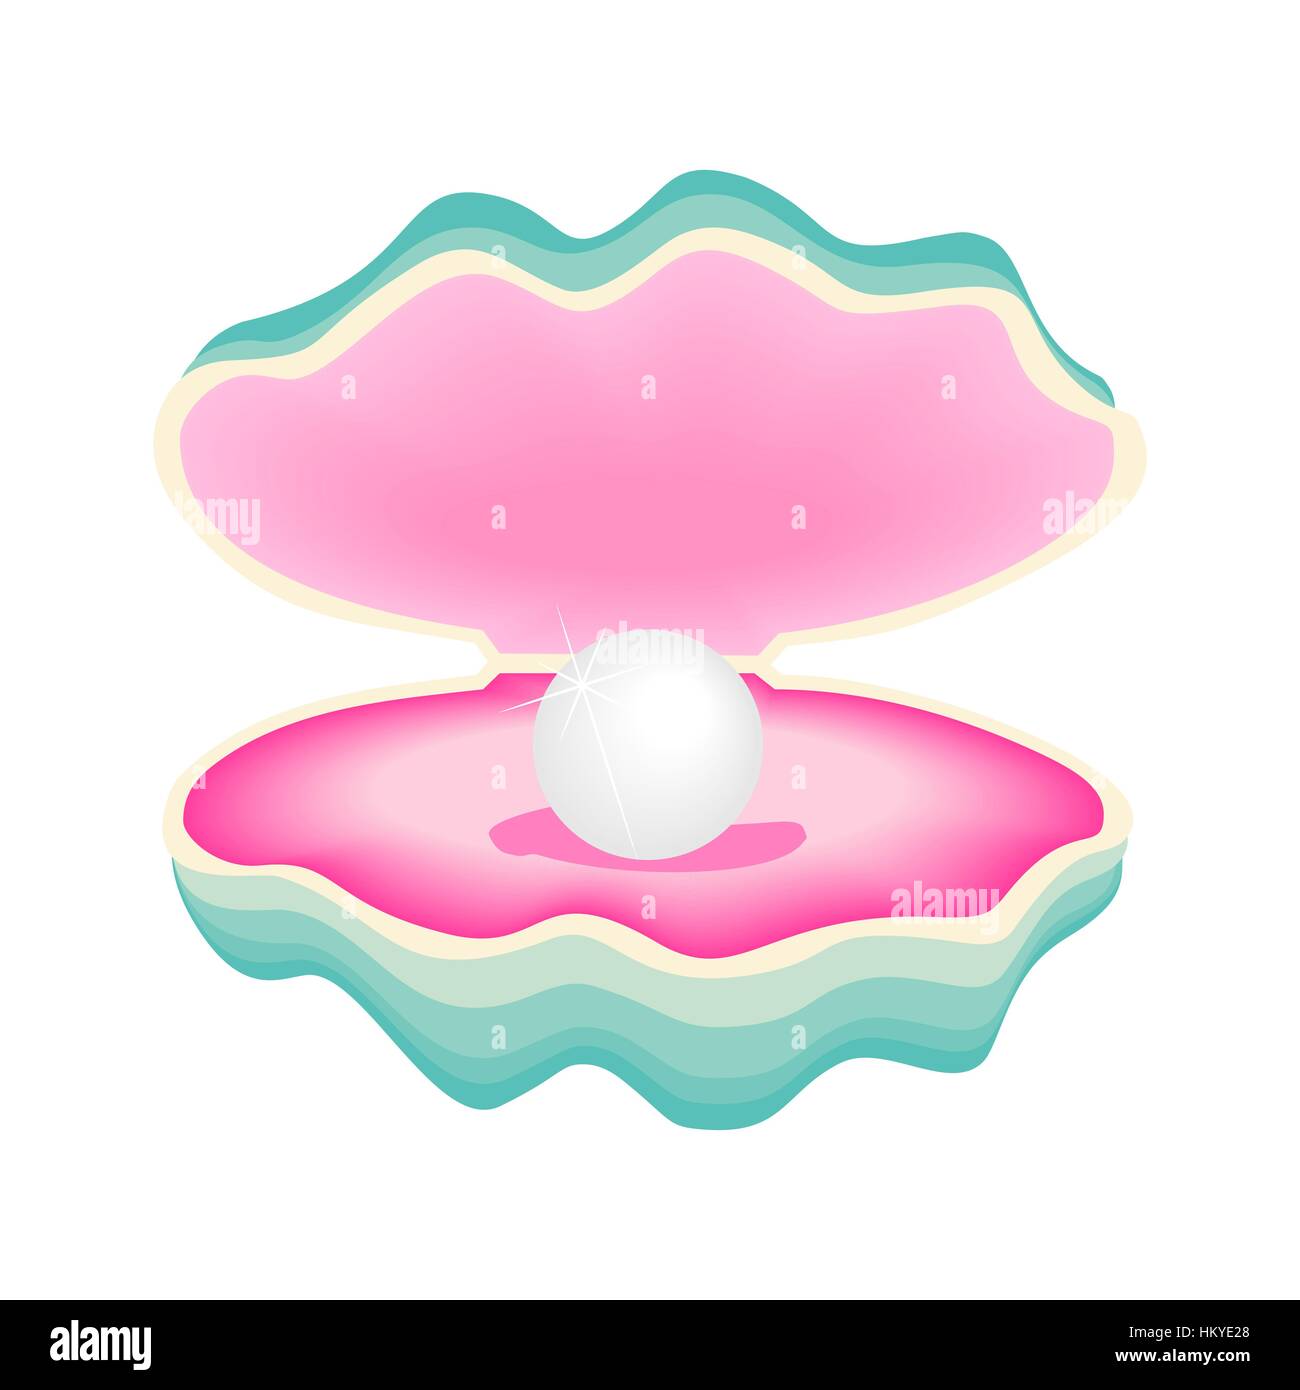 Vektor-Illustration einer schönen Perle in einer Schale auf einem weißen Hintergrund Stock Vektor